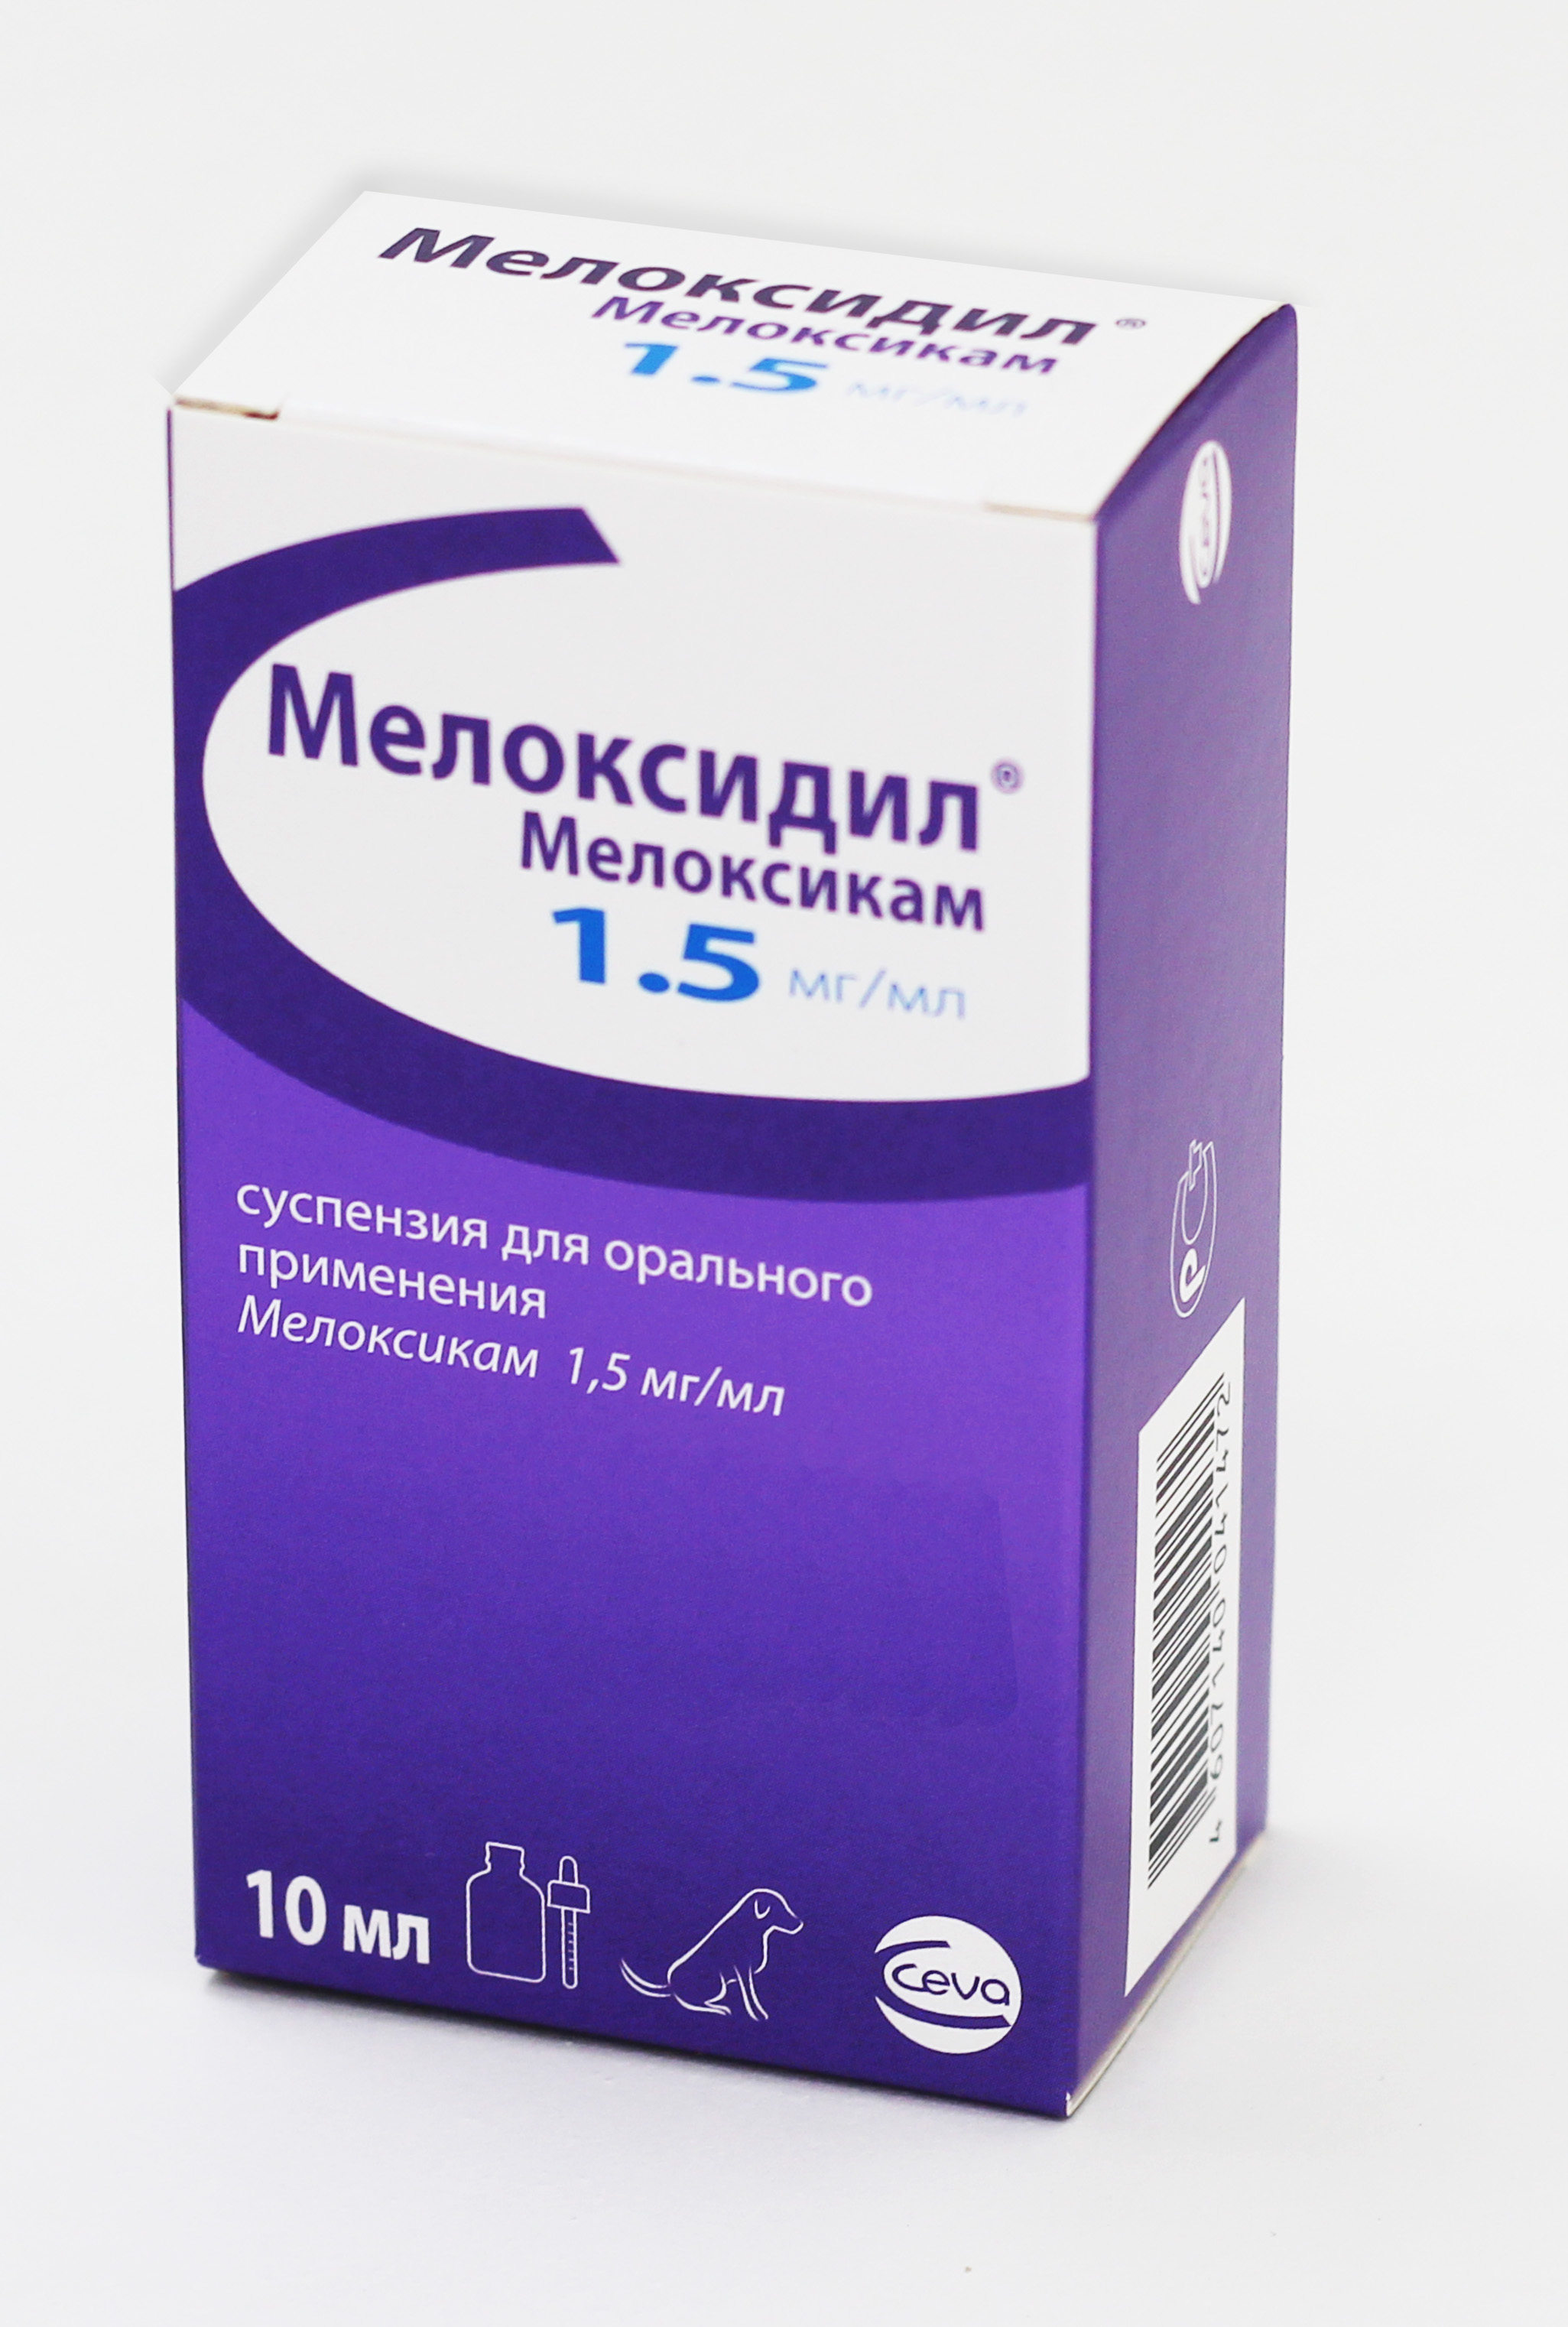 Ceva Мелоксидил суспензия для орального применения 1,5 мг/мл 10 мл